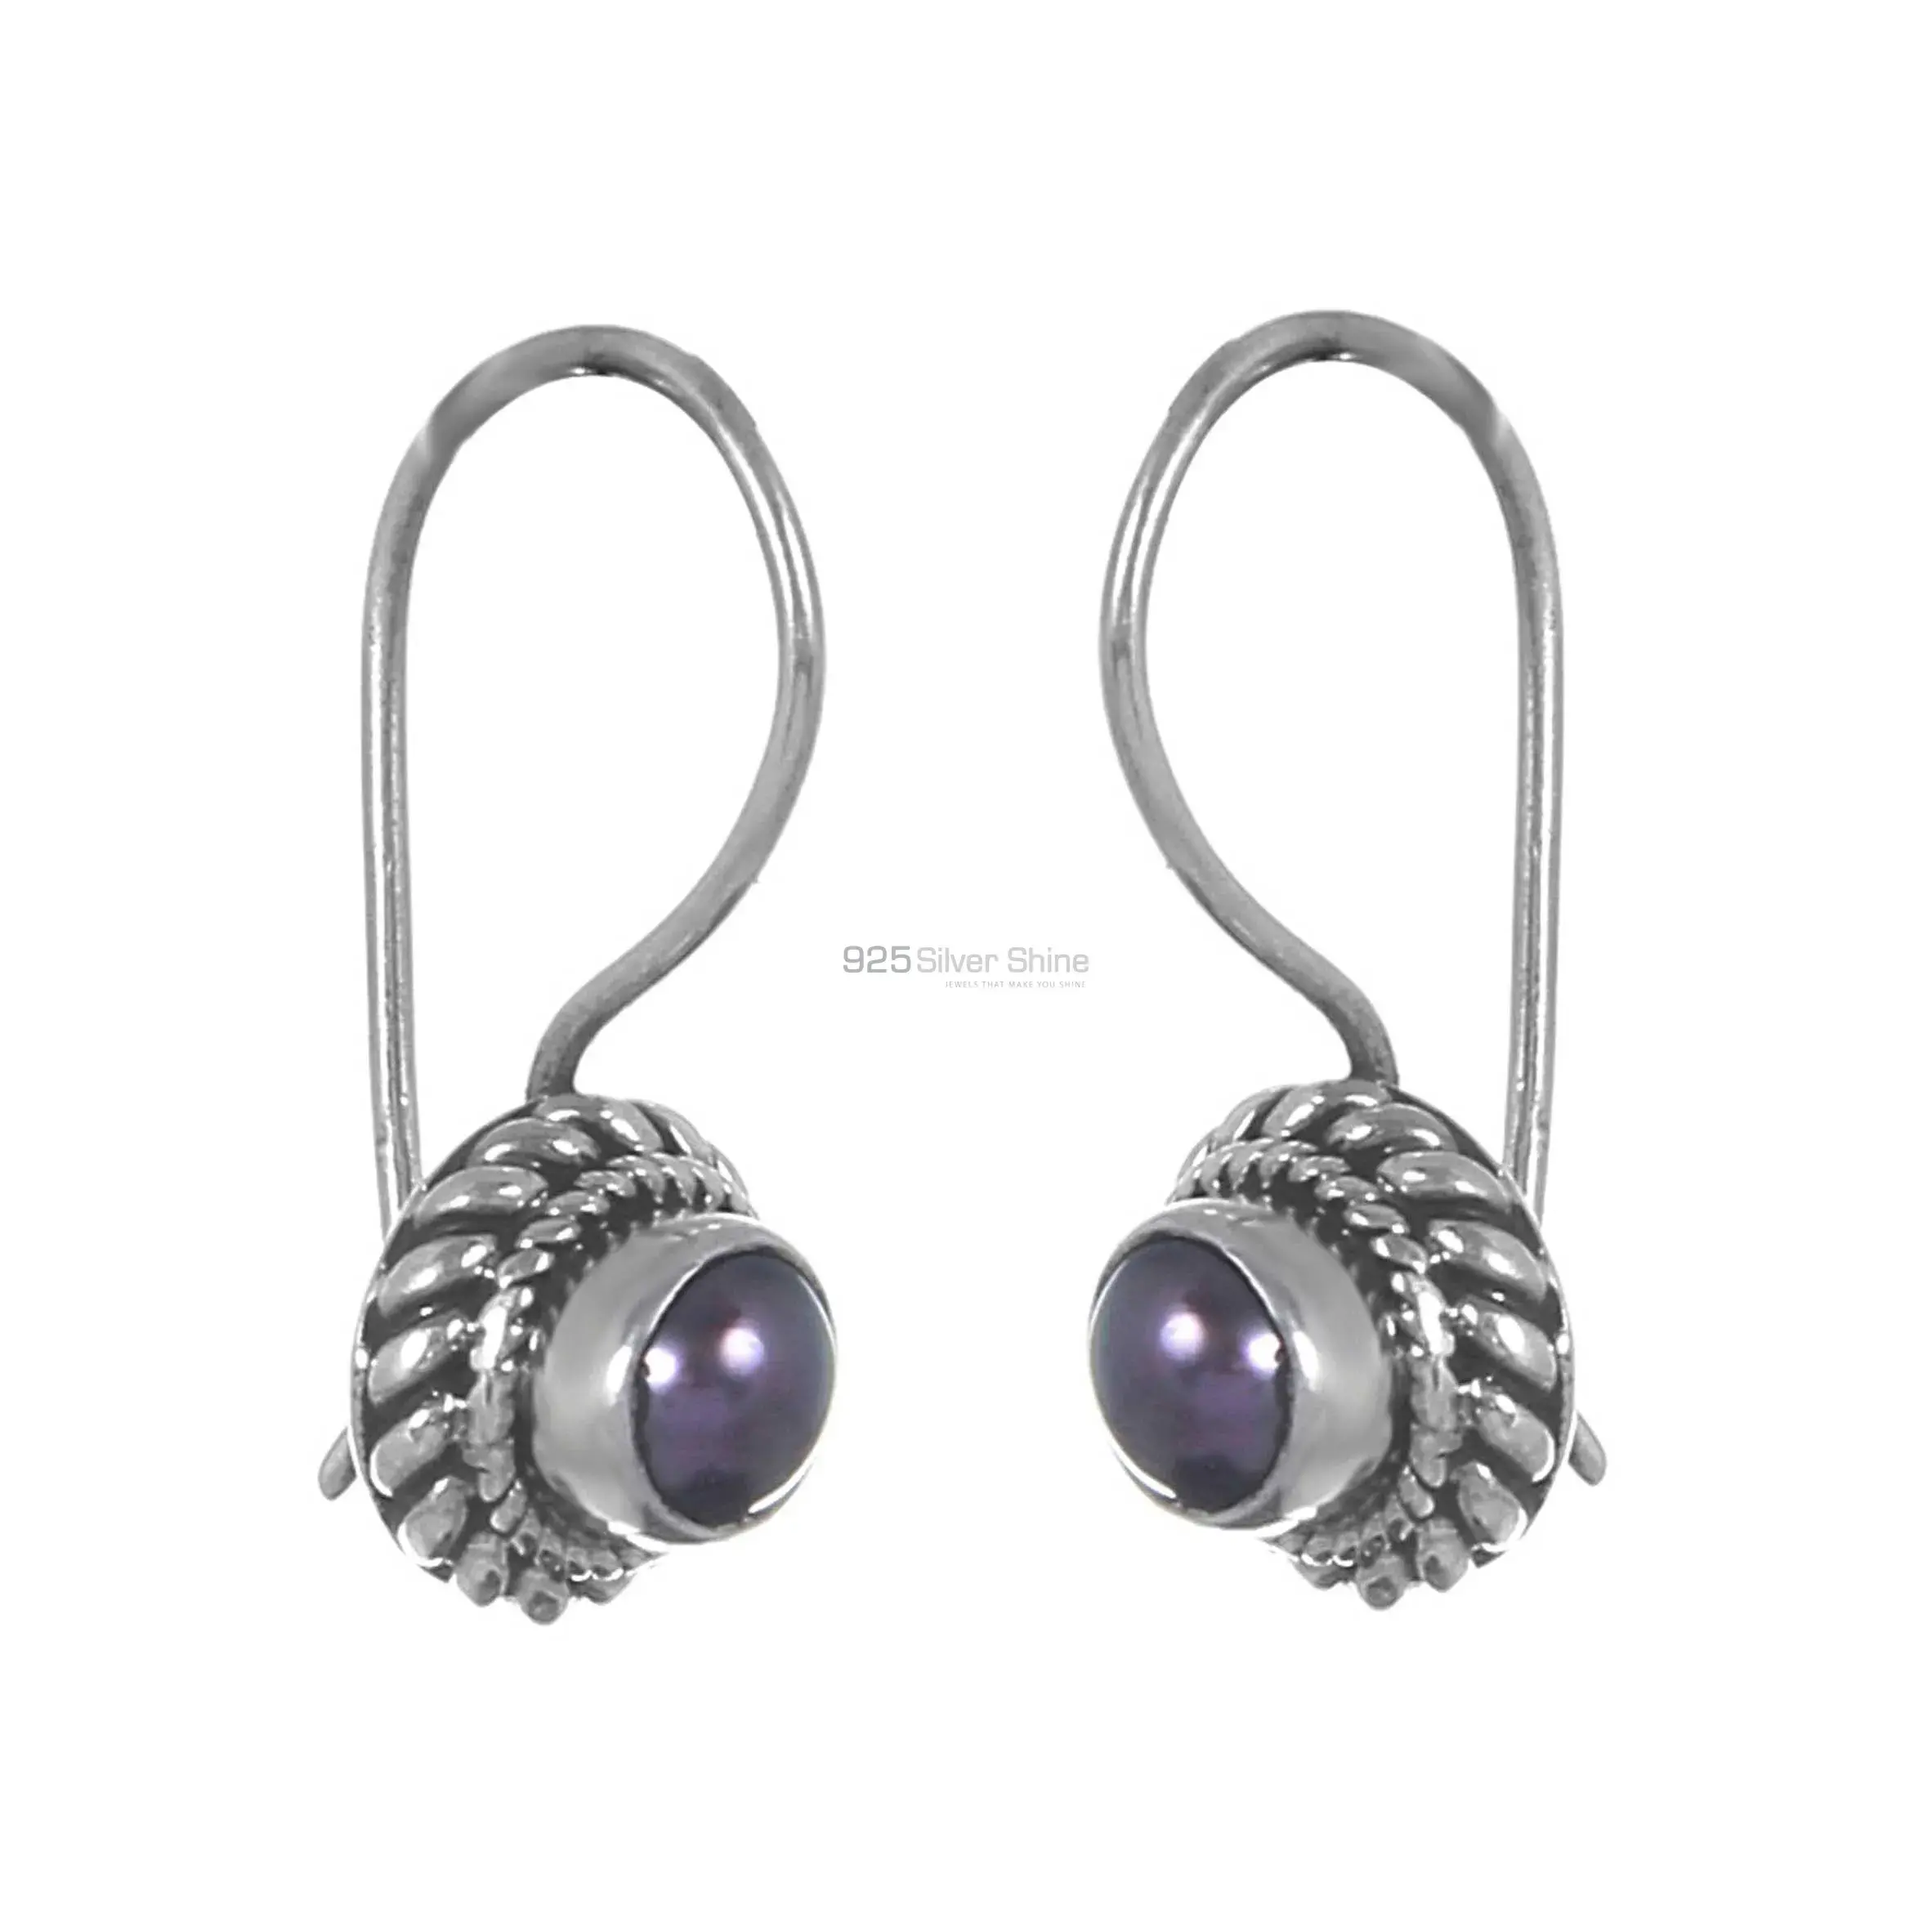 Wholesale Black Pearl Gemstone Earrings In Sterling Silver Jewelry 925SE221_0